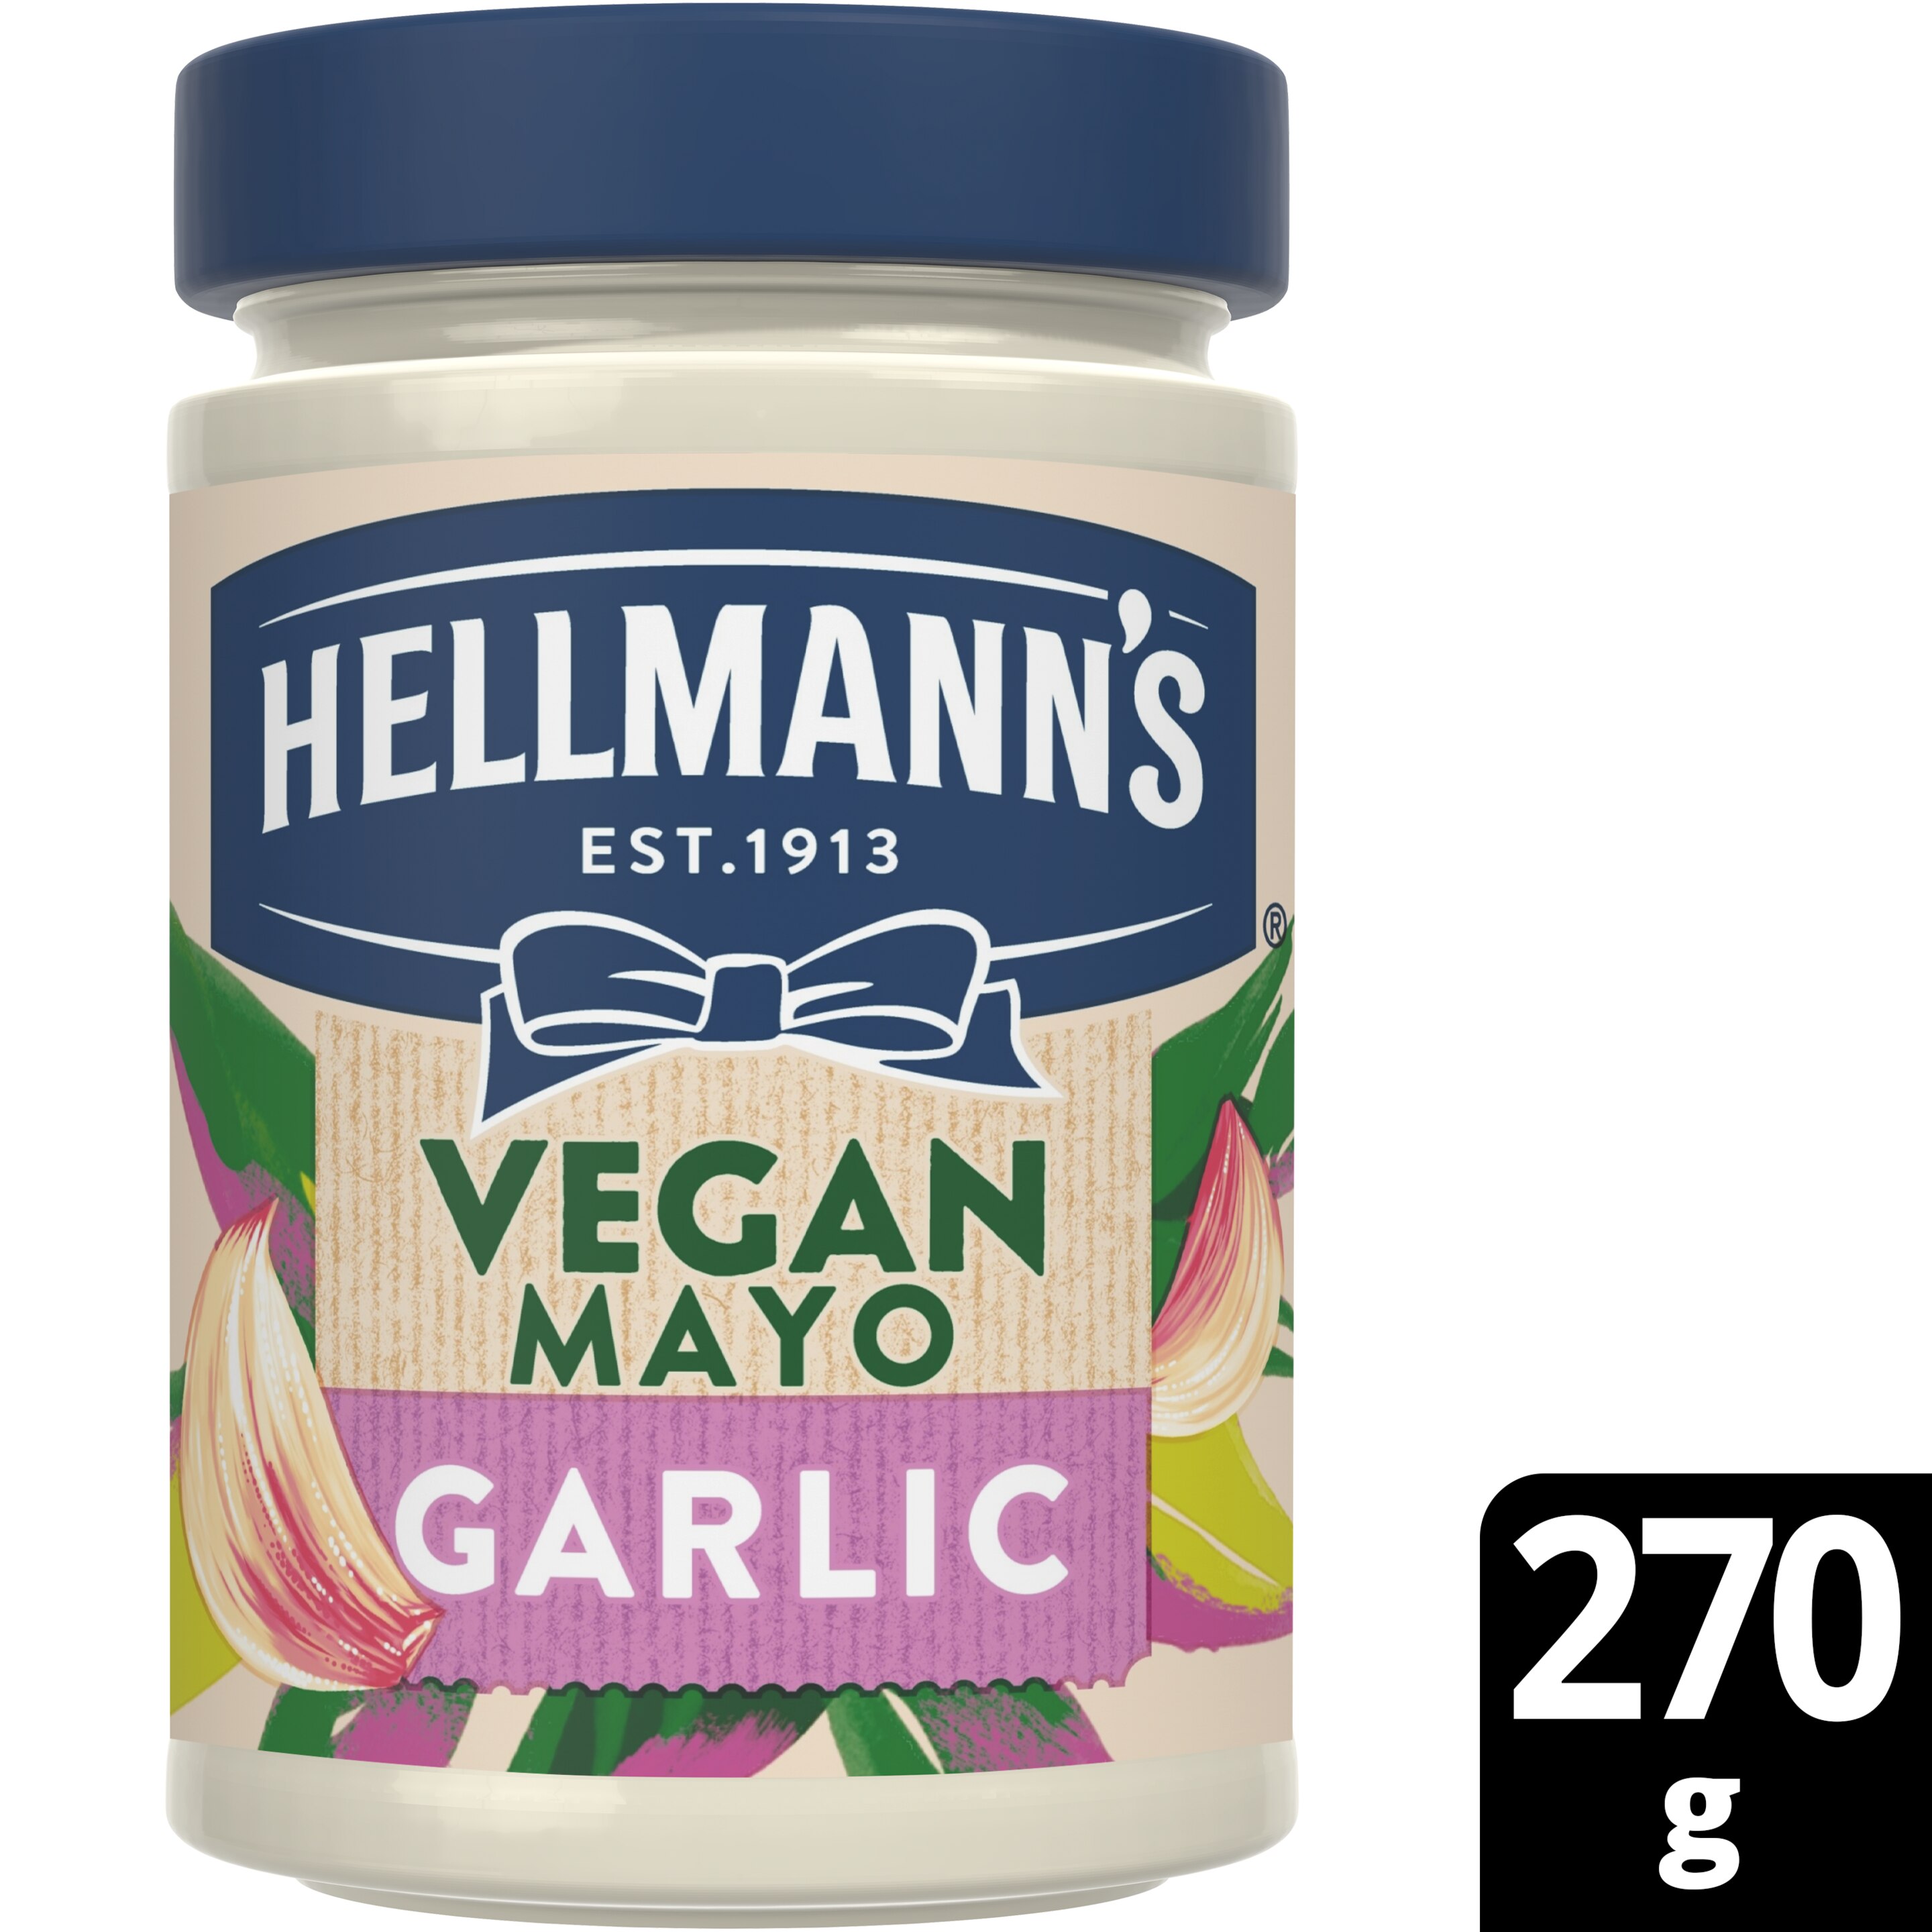 Hellmann's Vegan Mayo Garlic